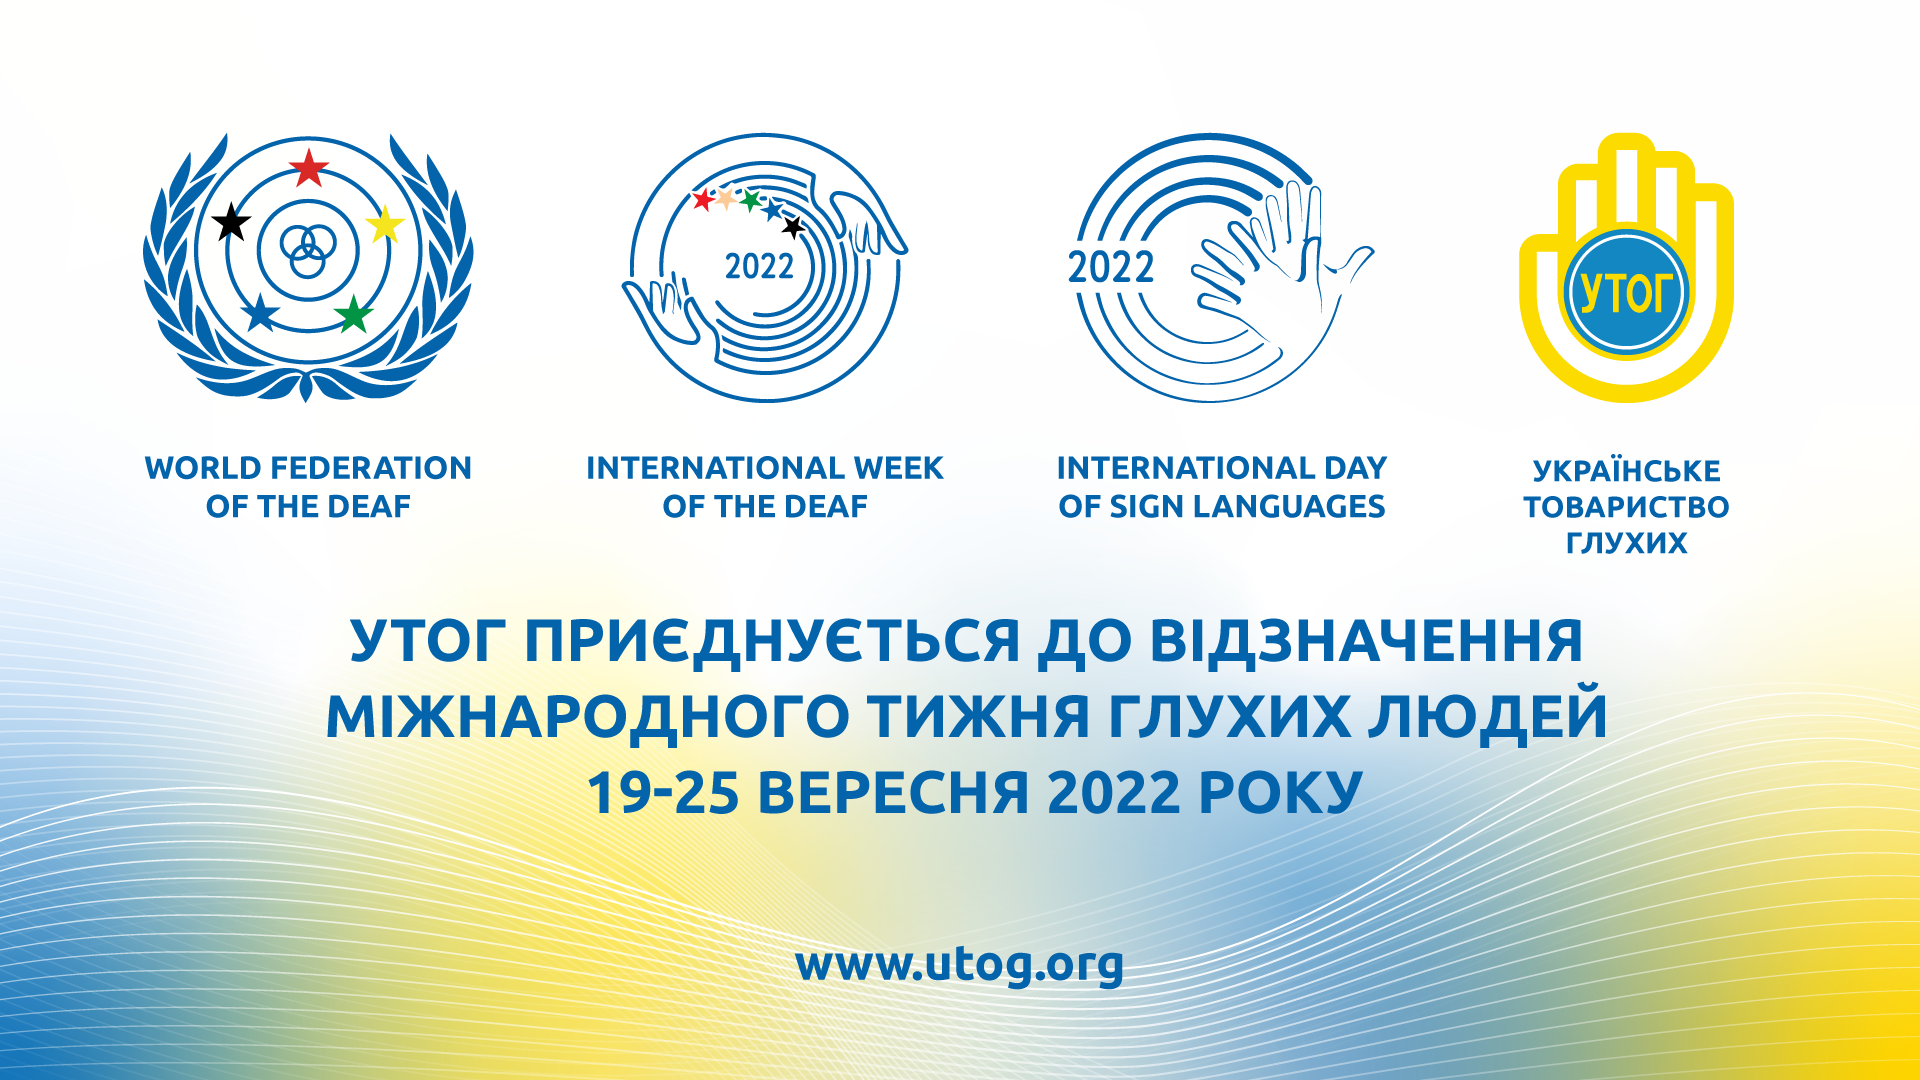 УТОГ приєднується до відзначення Міжнародного тижня глухих людей 19-25 вересня 2022 року